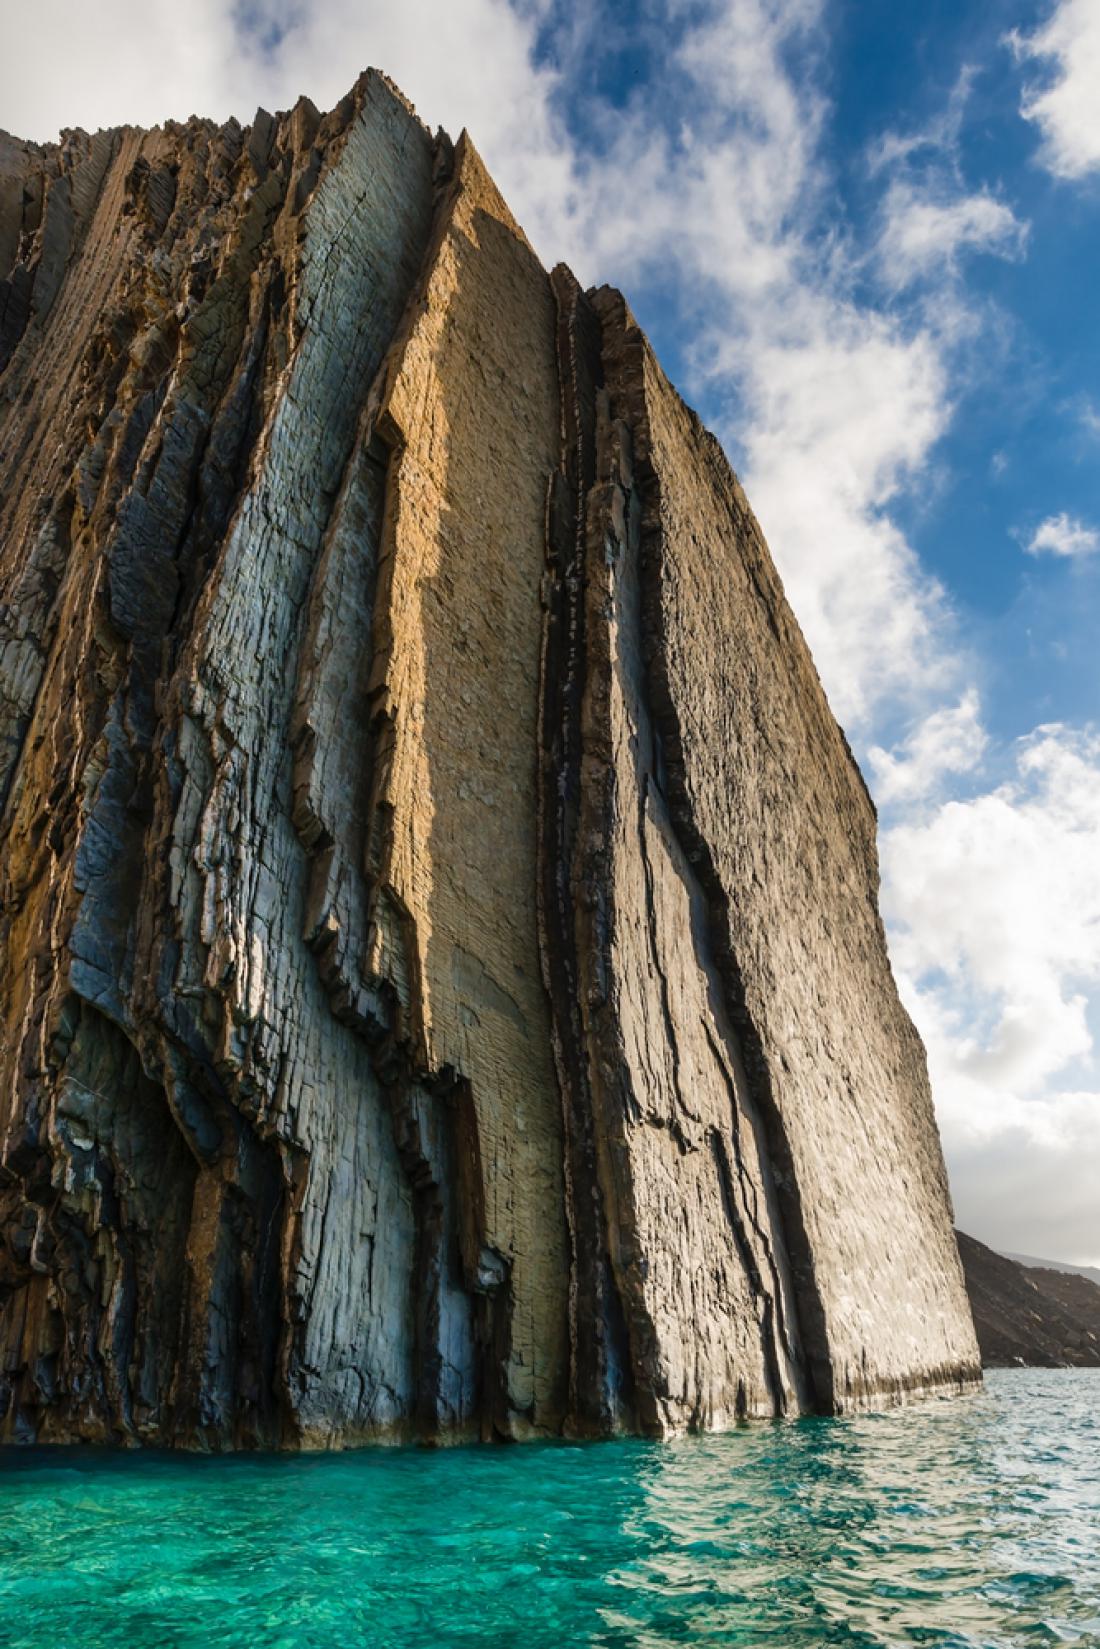 Spektakularne oblike kamnin delajo otok Kasos nekaj posebnega. Foto: Giovanni Rinaldi/Shutterstock